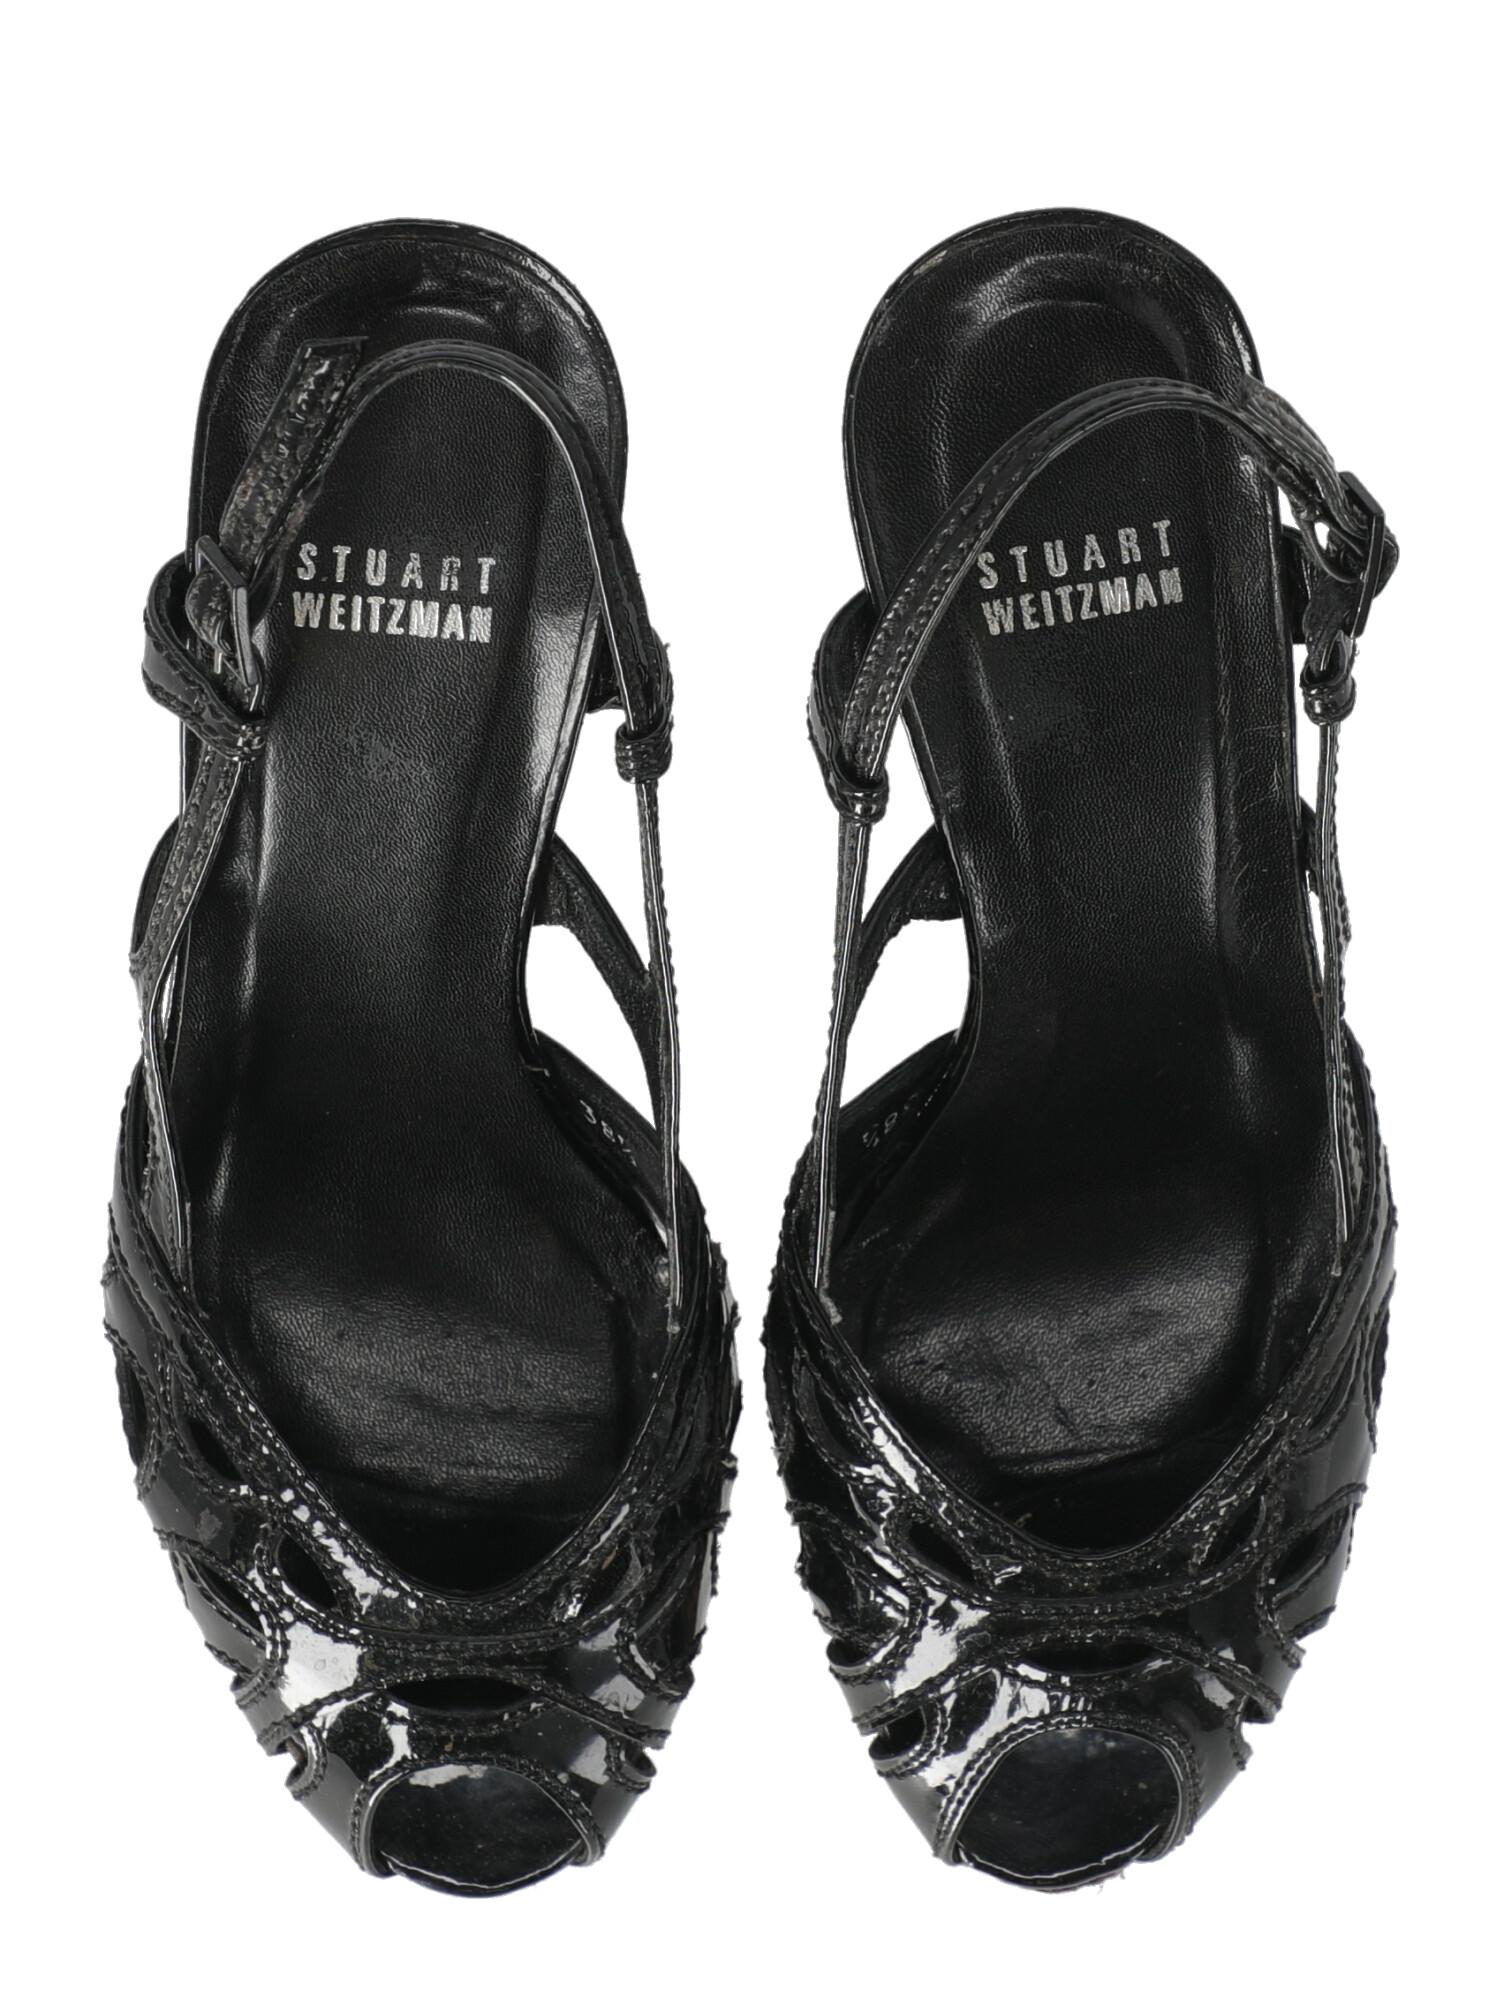 Stuart Weitzman Women  Sandals Black Leather IT 38.5 For Sale 2